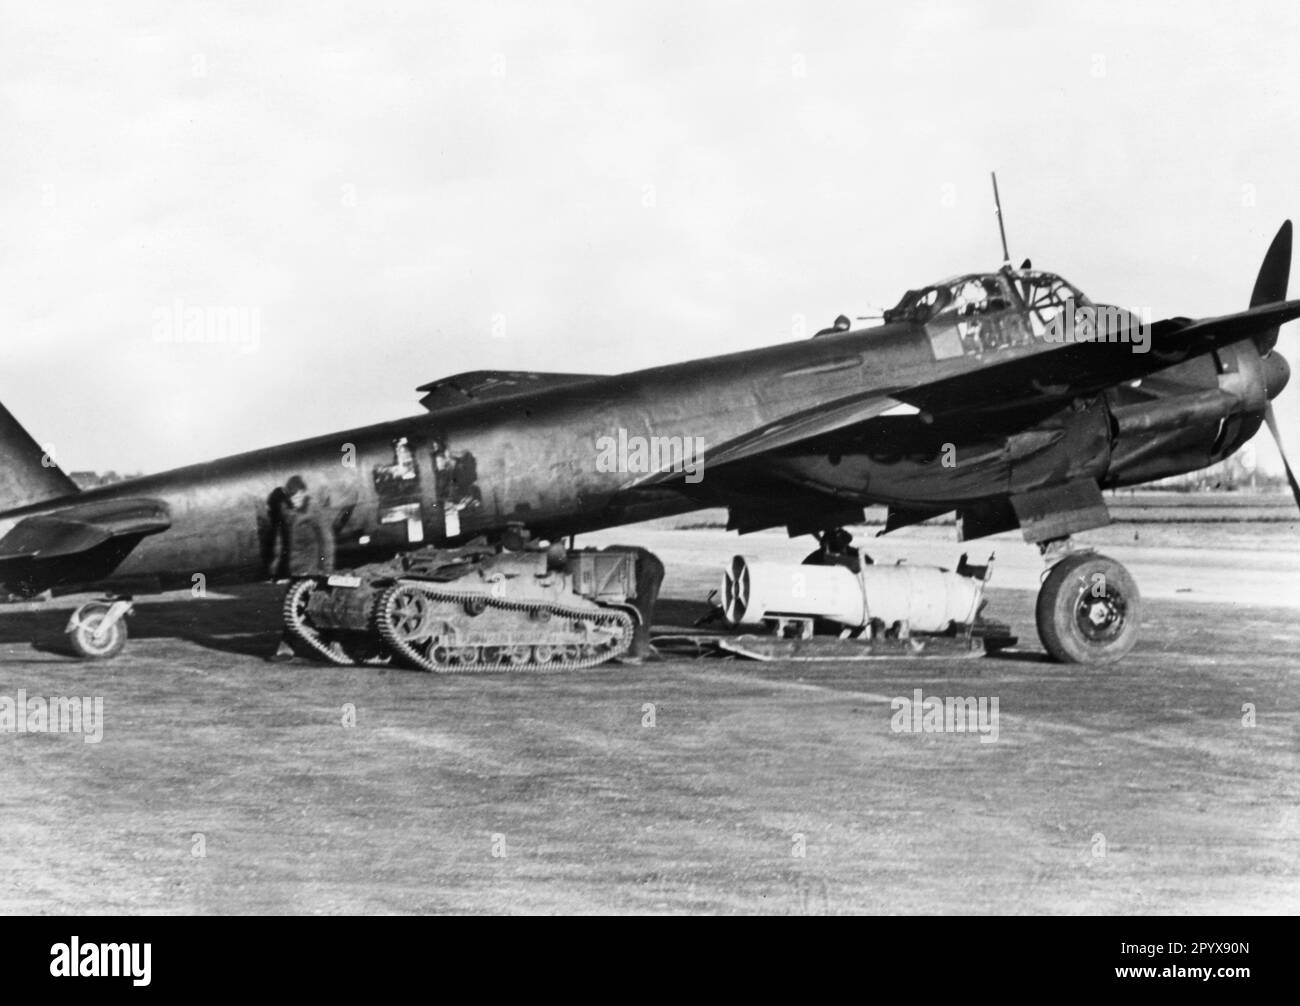 Ein deutsches Junkers Ju 88-Kampfflugzeug ist mit Bomben beladen für eine Mission gegen Ziele in England. Der Unterwagen eines französischen Tanks dient als Traktor. Das Flugzeug ist mit einer dunklen Tarnfarbe lackiert, das Balkenkreuz ist teilweise auch dunkel. Foto: Rempel. [Maschinelle Übersetzung] Stockfoto